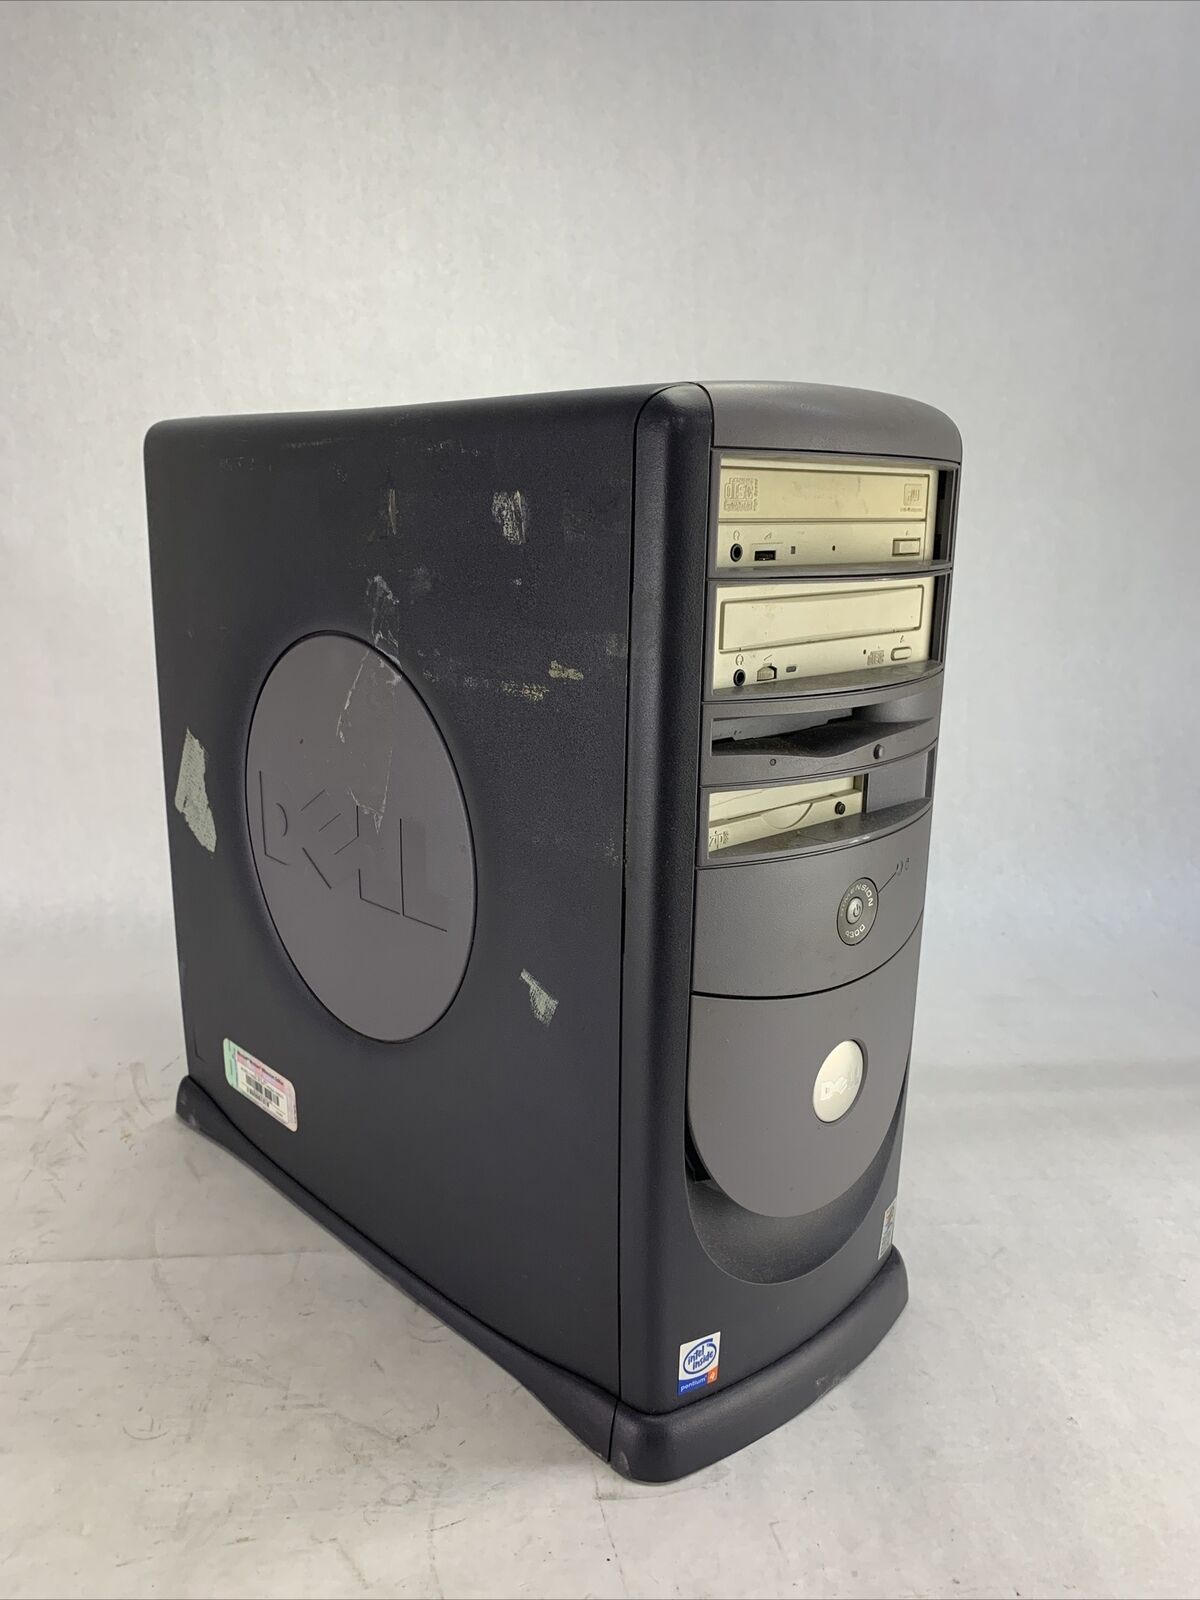 4300 old dell desktop models